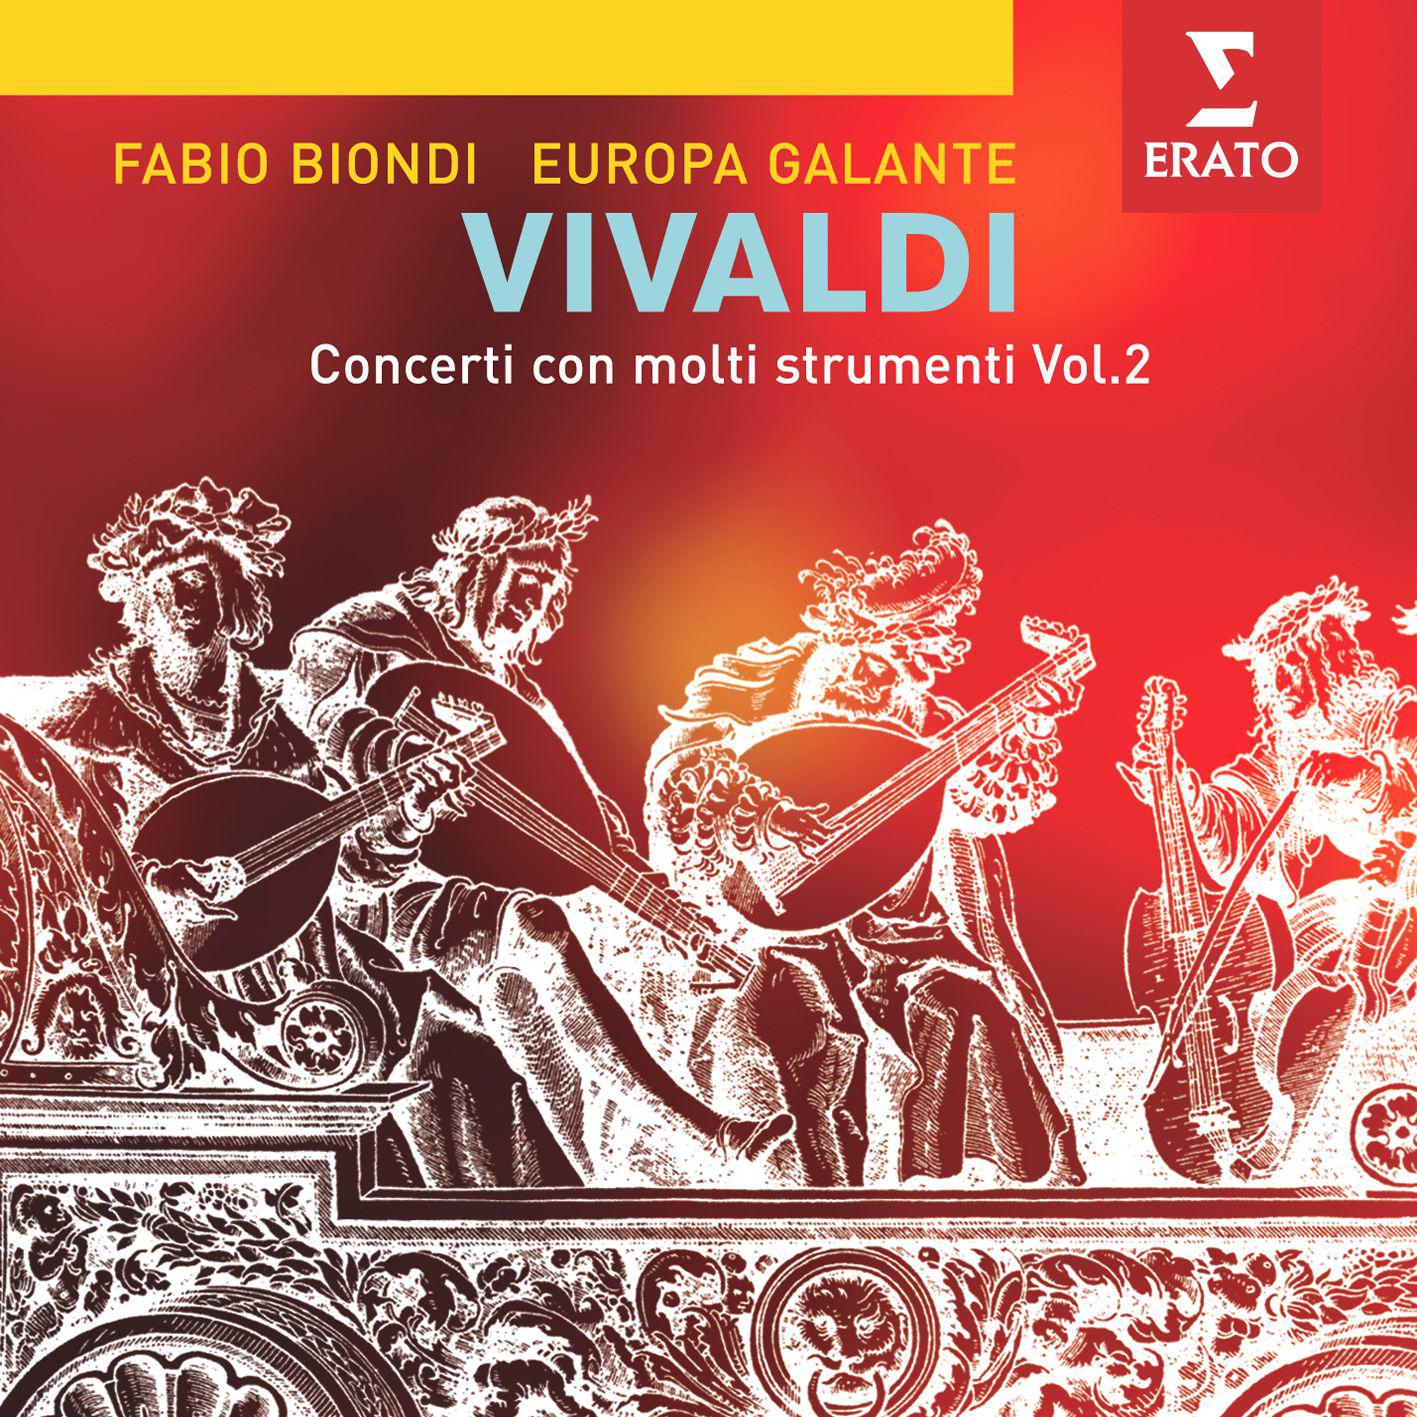 Concerto for 4 solo violins & strings in B flat major RV553: I Allegro